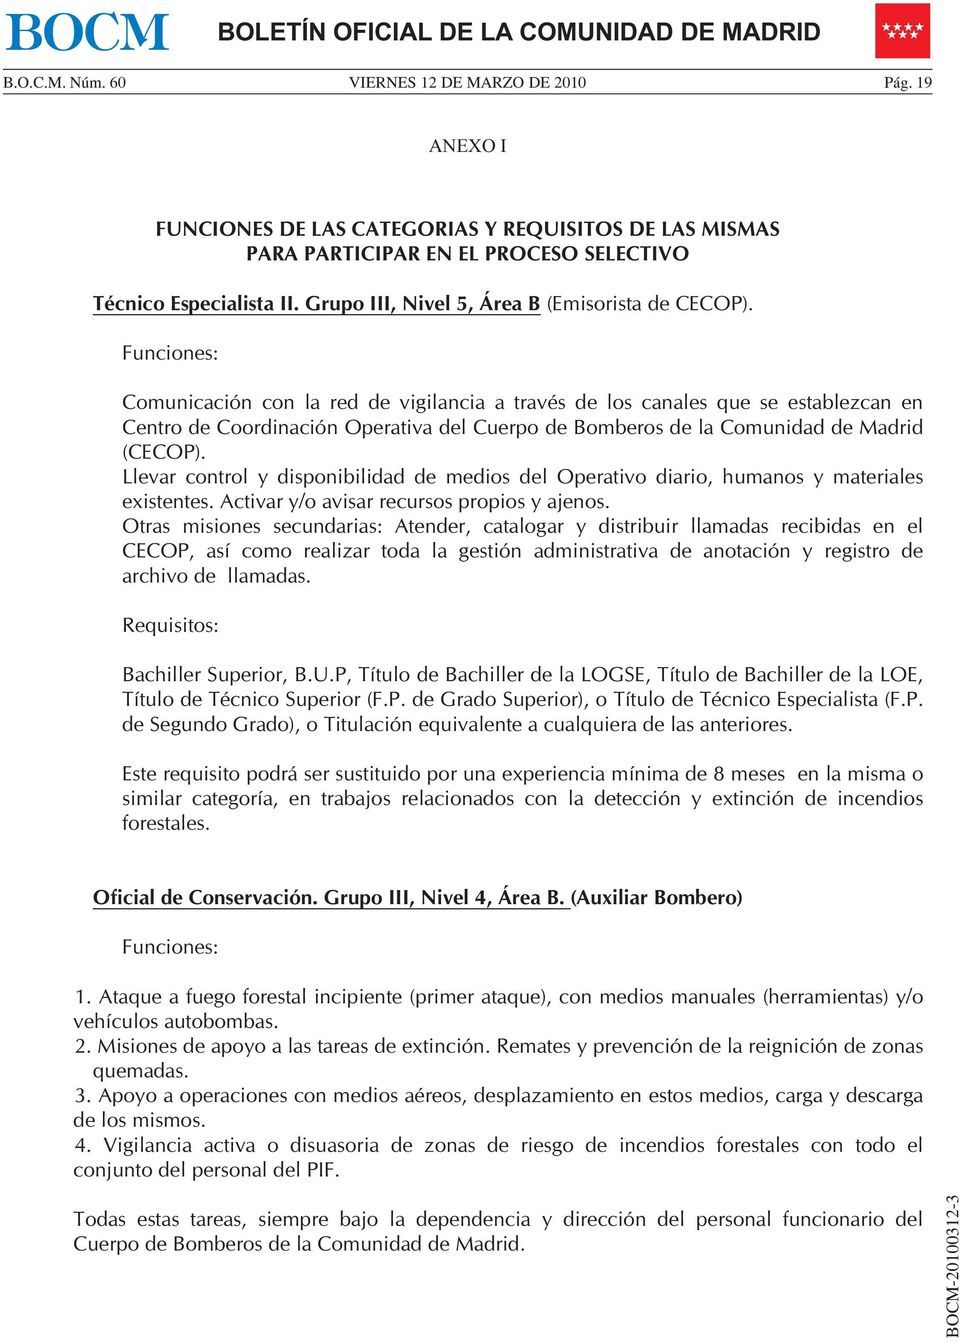 Funciones: Comunicación con la red de vigilancia a través de los canales que se establezcan en Centro de Coordinación Operativa del Cuerpo de Bomberos de la Comunidad de Madrid (CECOP).